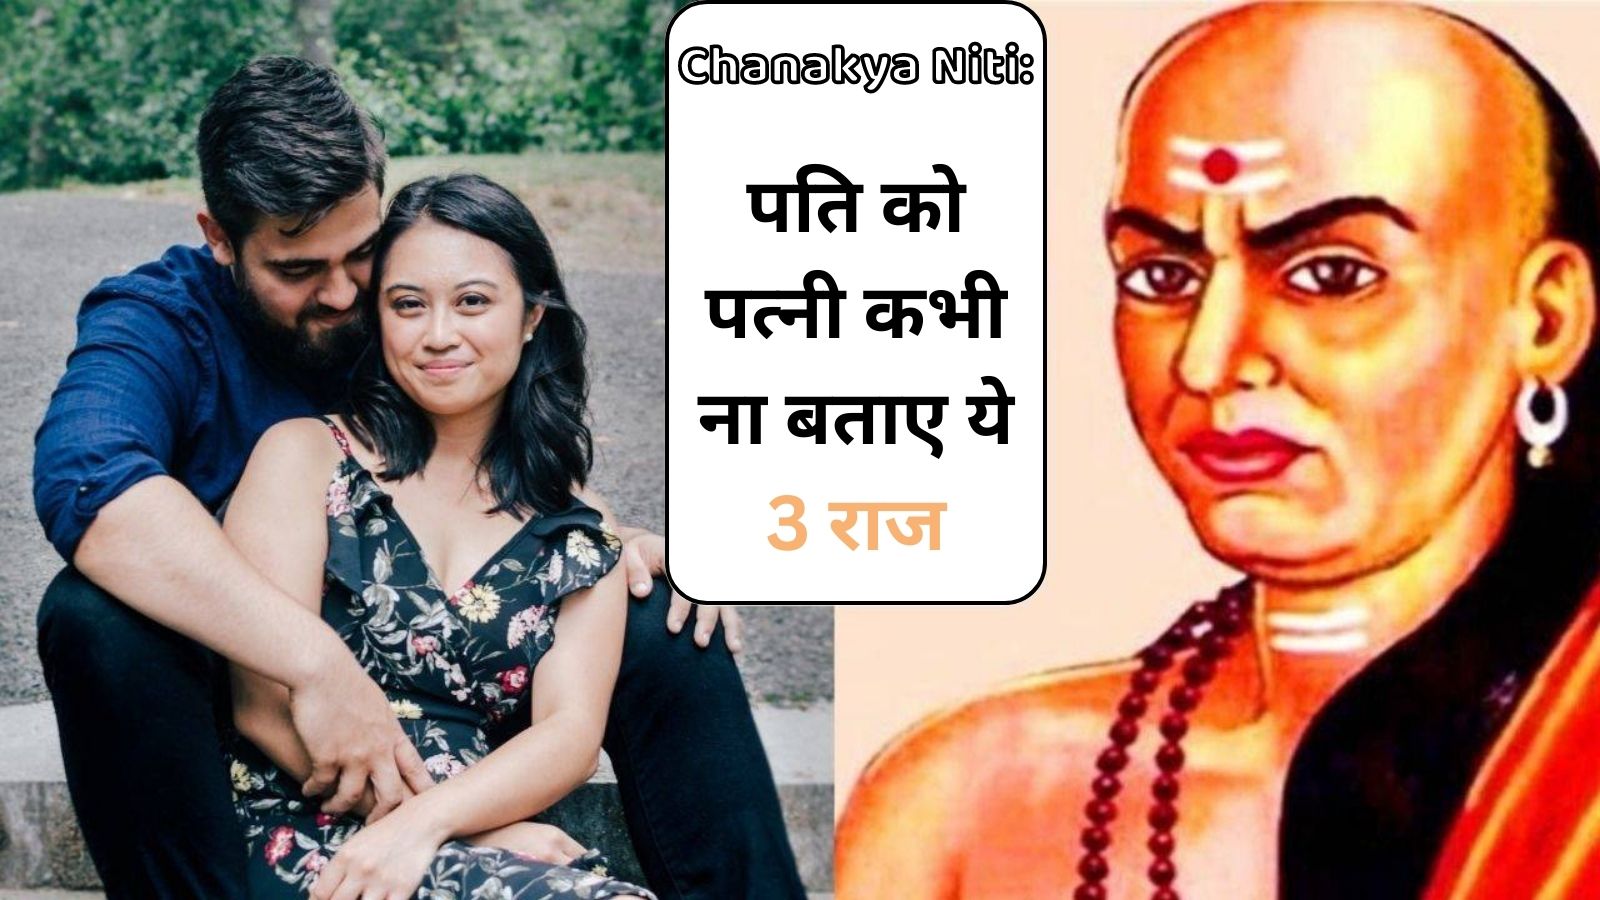 Chanakya Niti: पति को पत्नी कभी ना बताए ये 3 राज, वरना ये राज की बाते कर देगी शादीशुदा जिंदगी बर्बाद